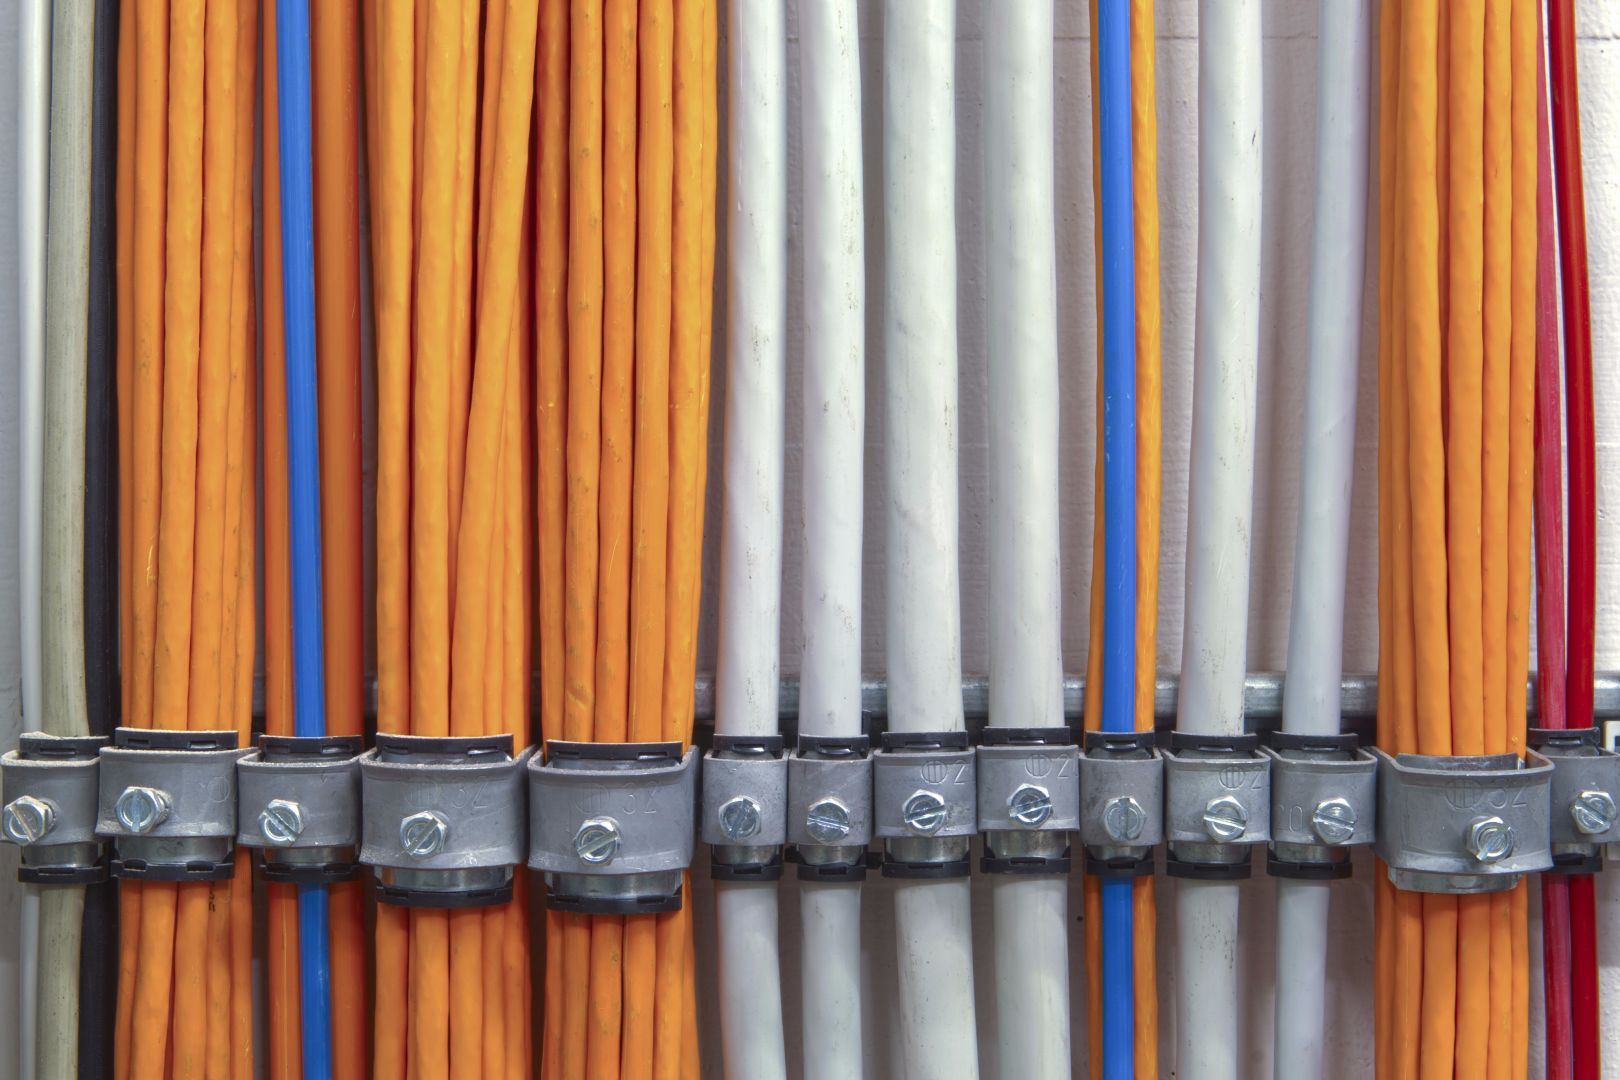 Výměnu přívodních el. kabelů v bytovém domě, 64 bytových jednotek